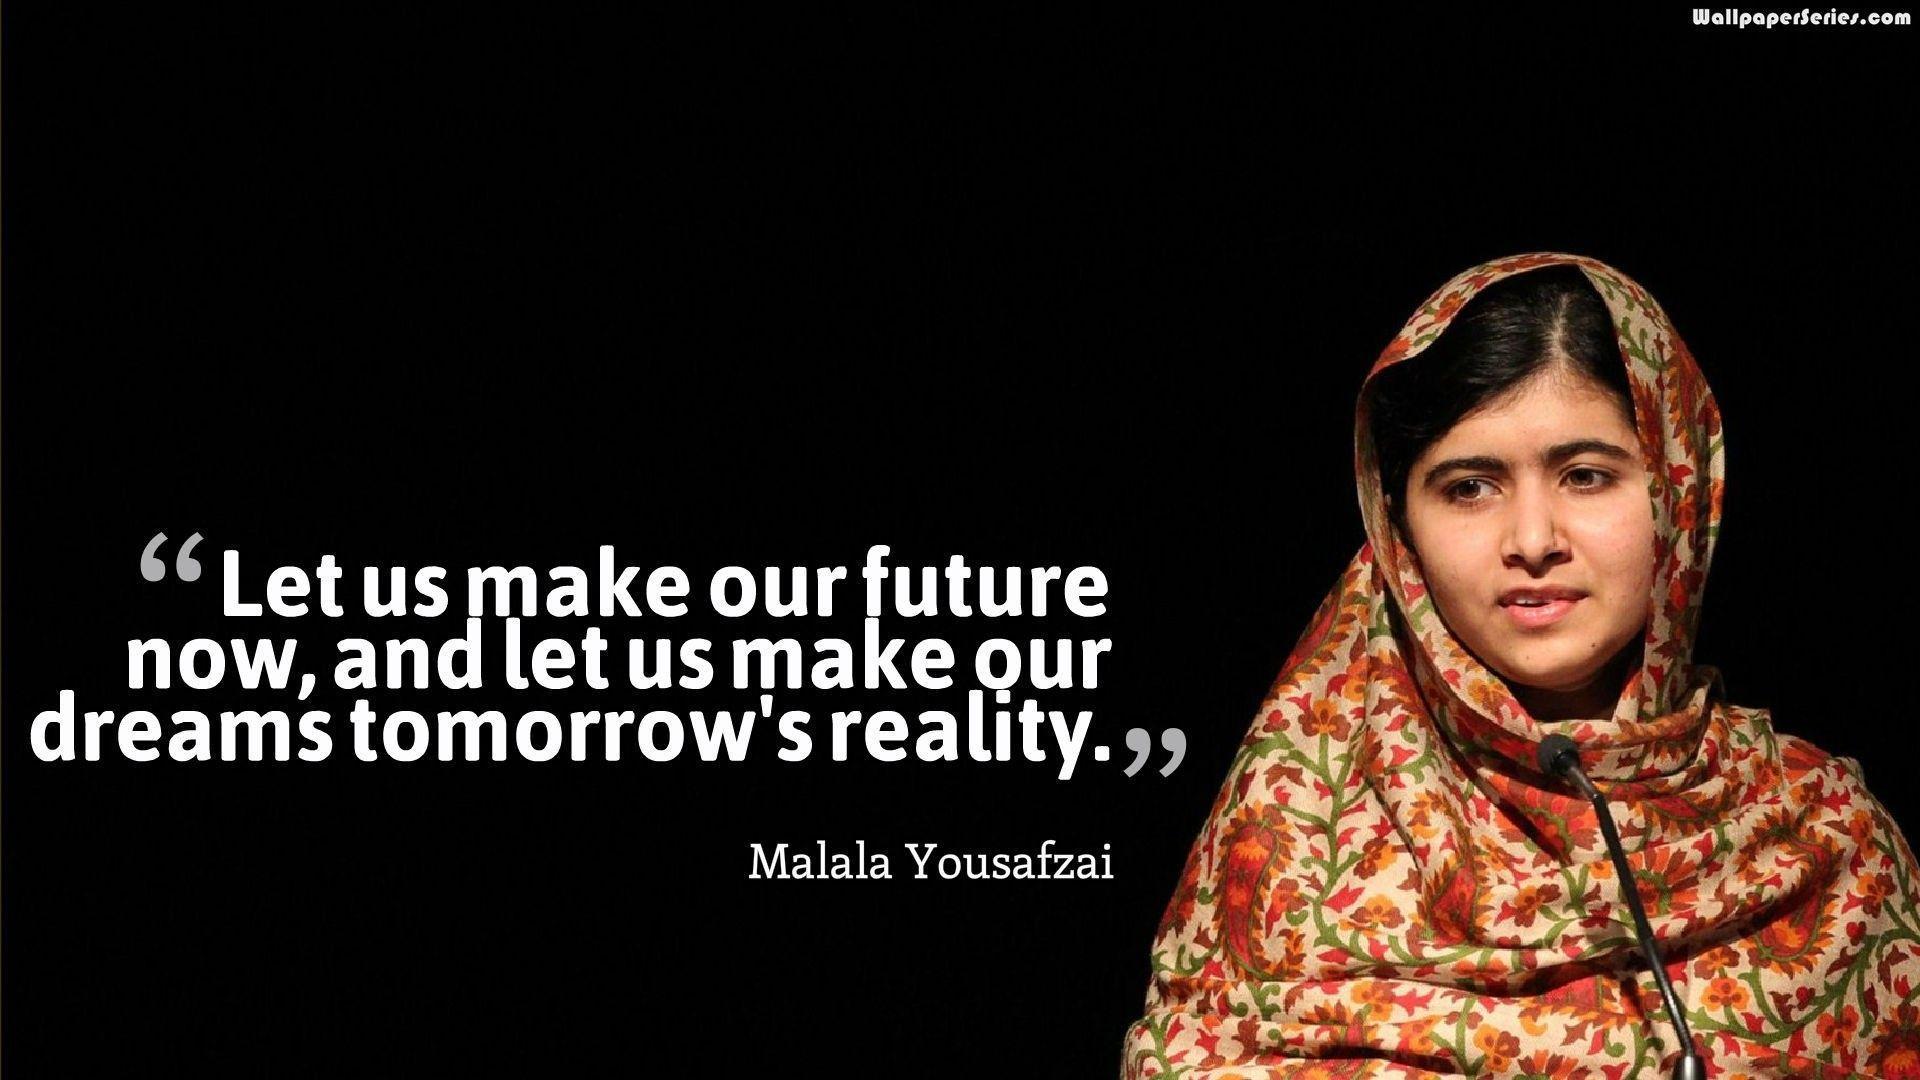 Malala Yousafzai Background Wallpaper